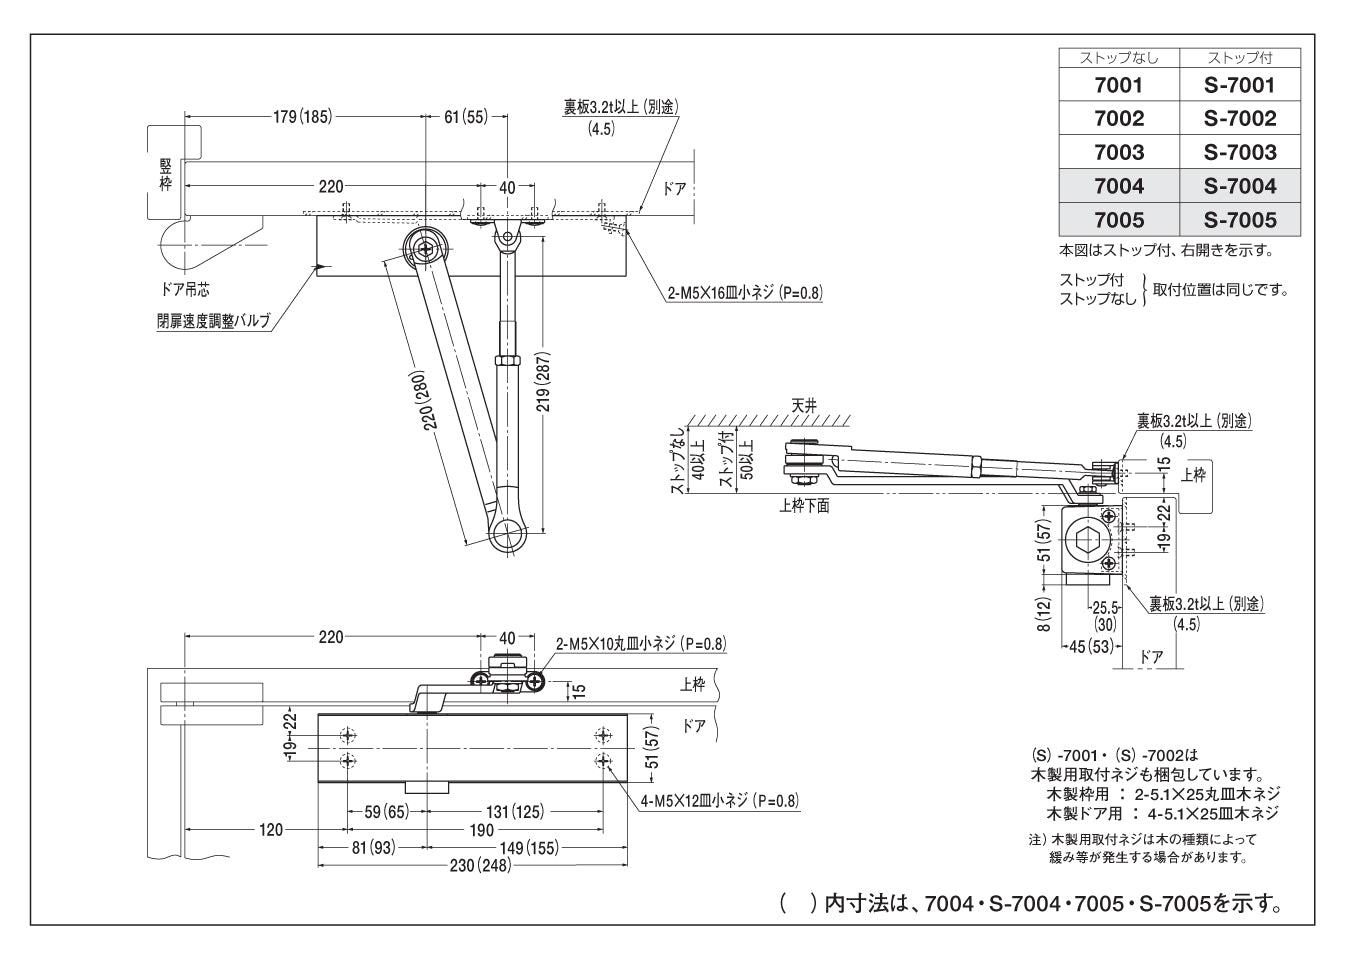 日本ドアチェック製造 ニュースター Z型ドアクローザ パラレル型 ストップ付 90°制限P-183Z-90／120°制限P-183Z-120 ドア重量65kg以下 950×2100 - 3